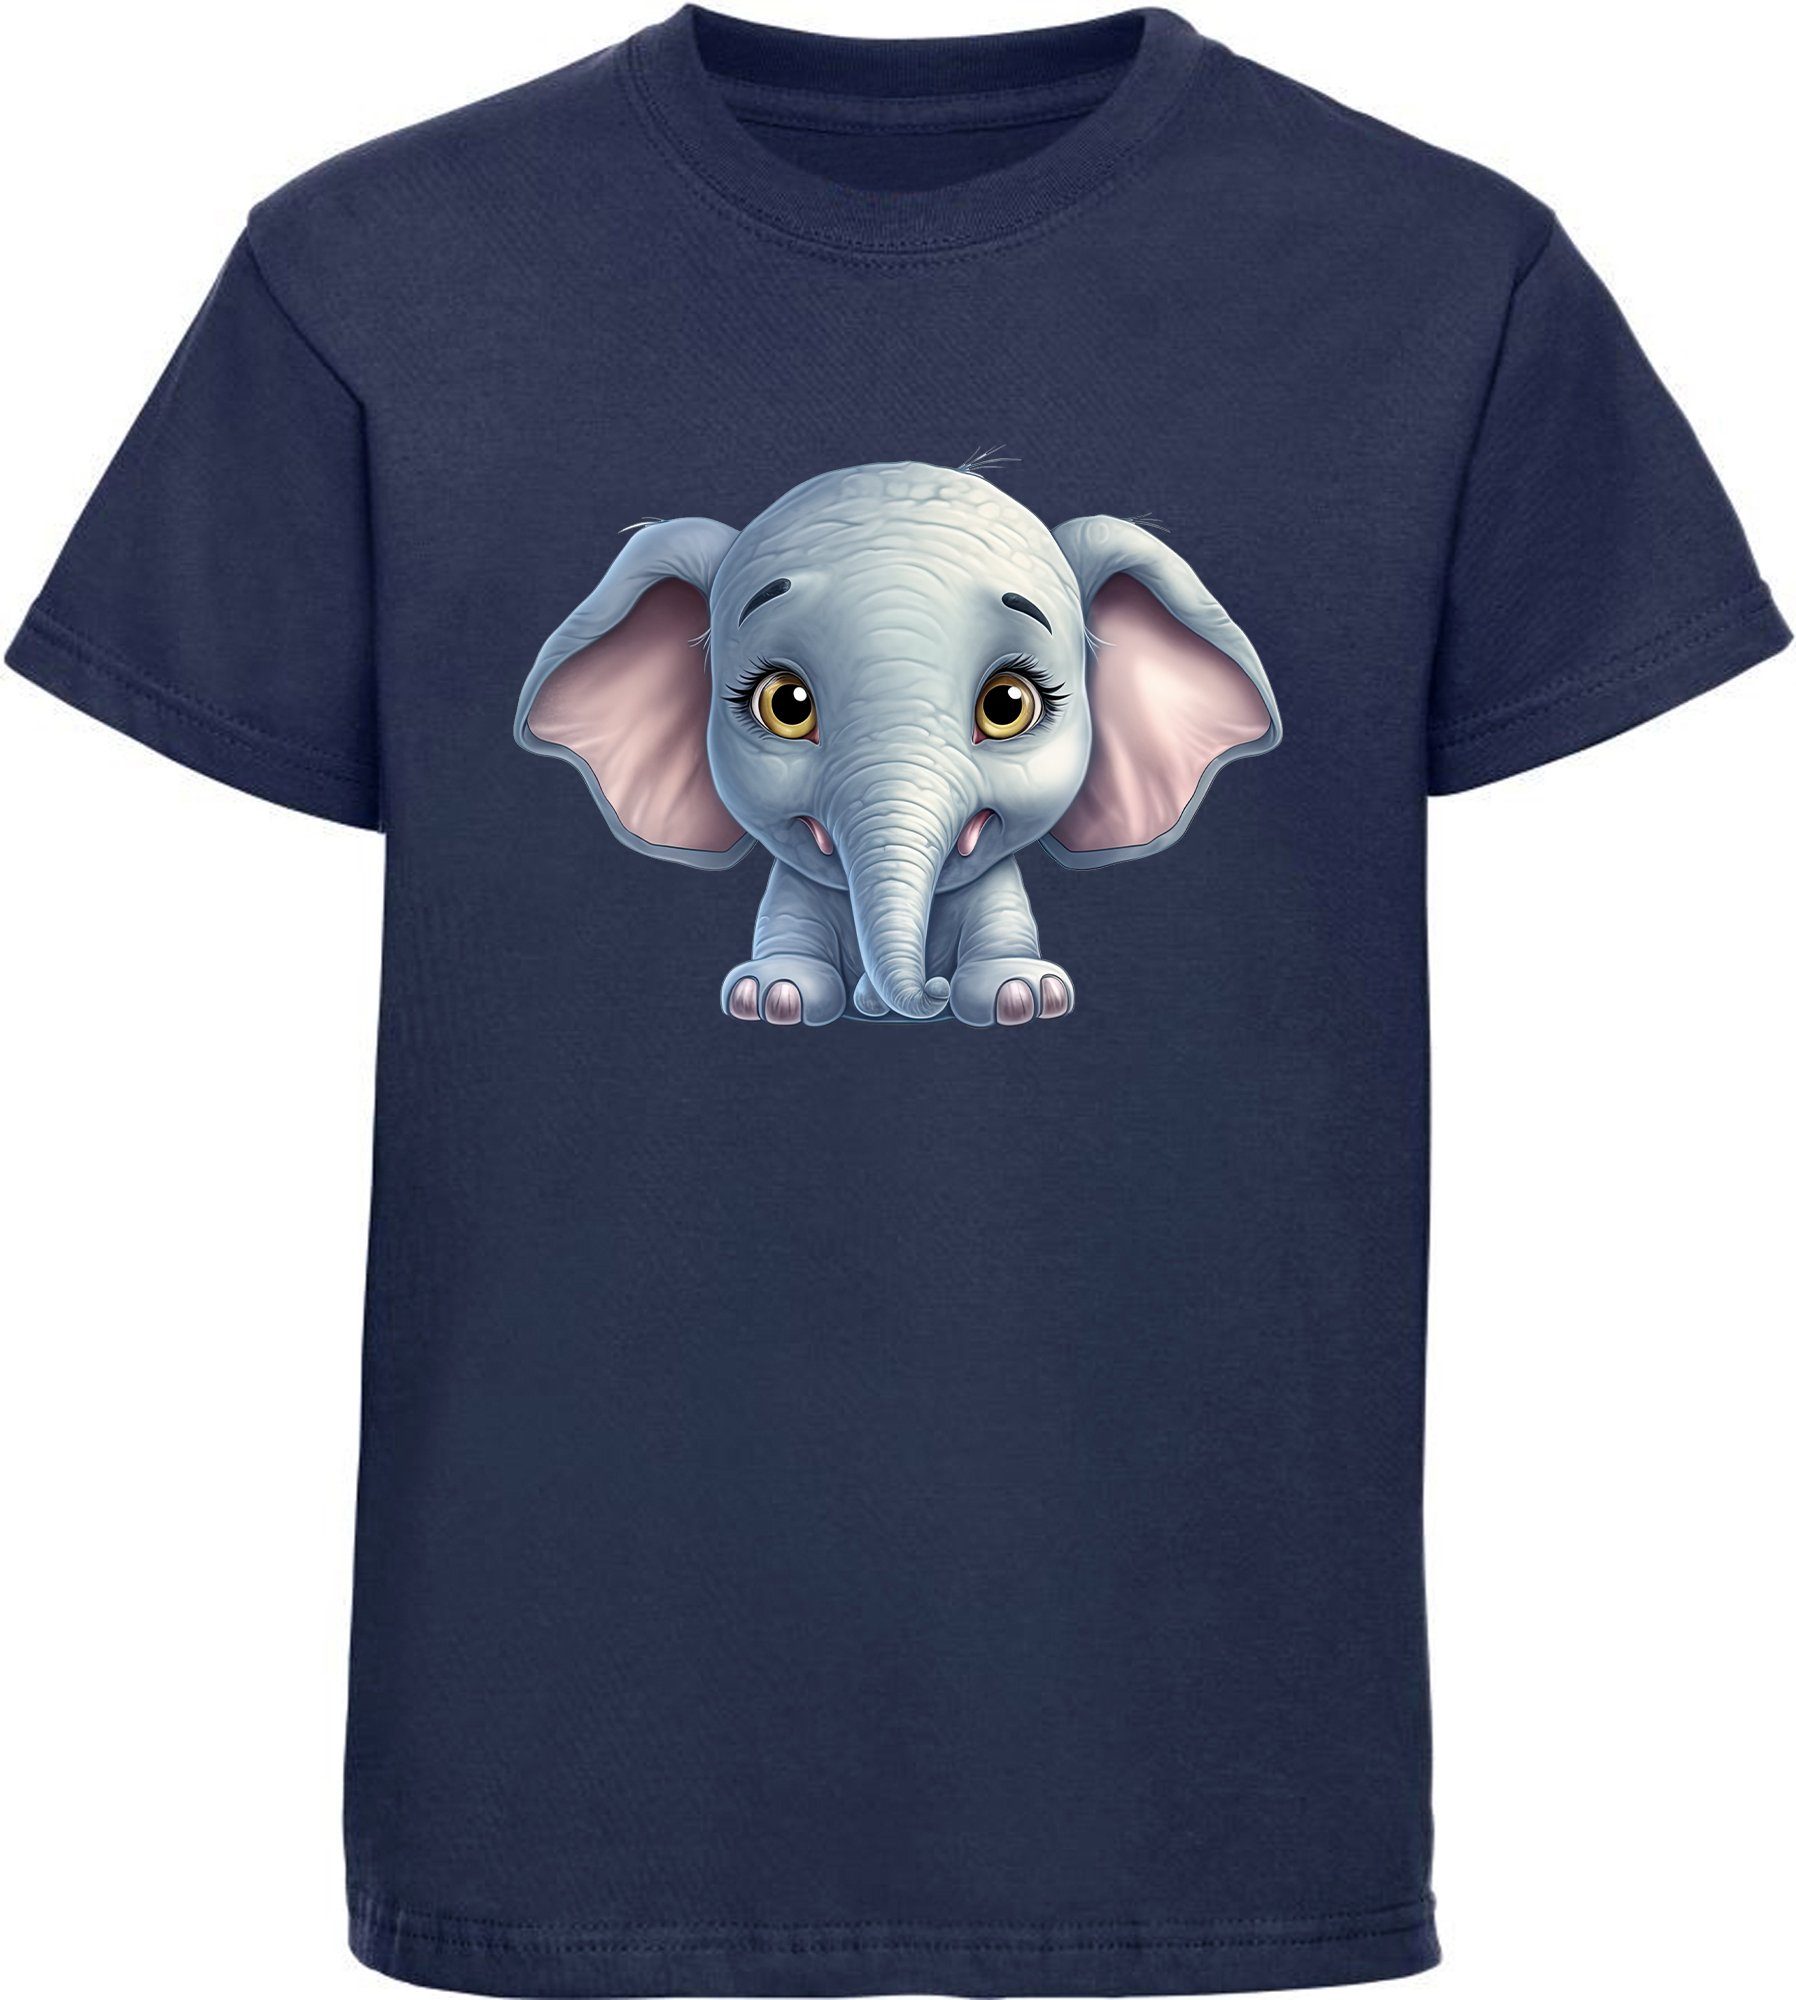 MyDesign24 T-Shirt Kinder Wildtier Baby navy blau Baumwollshirt Elefant - bedruckt Shirt i272 Aufdruck, Print mit